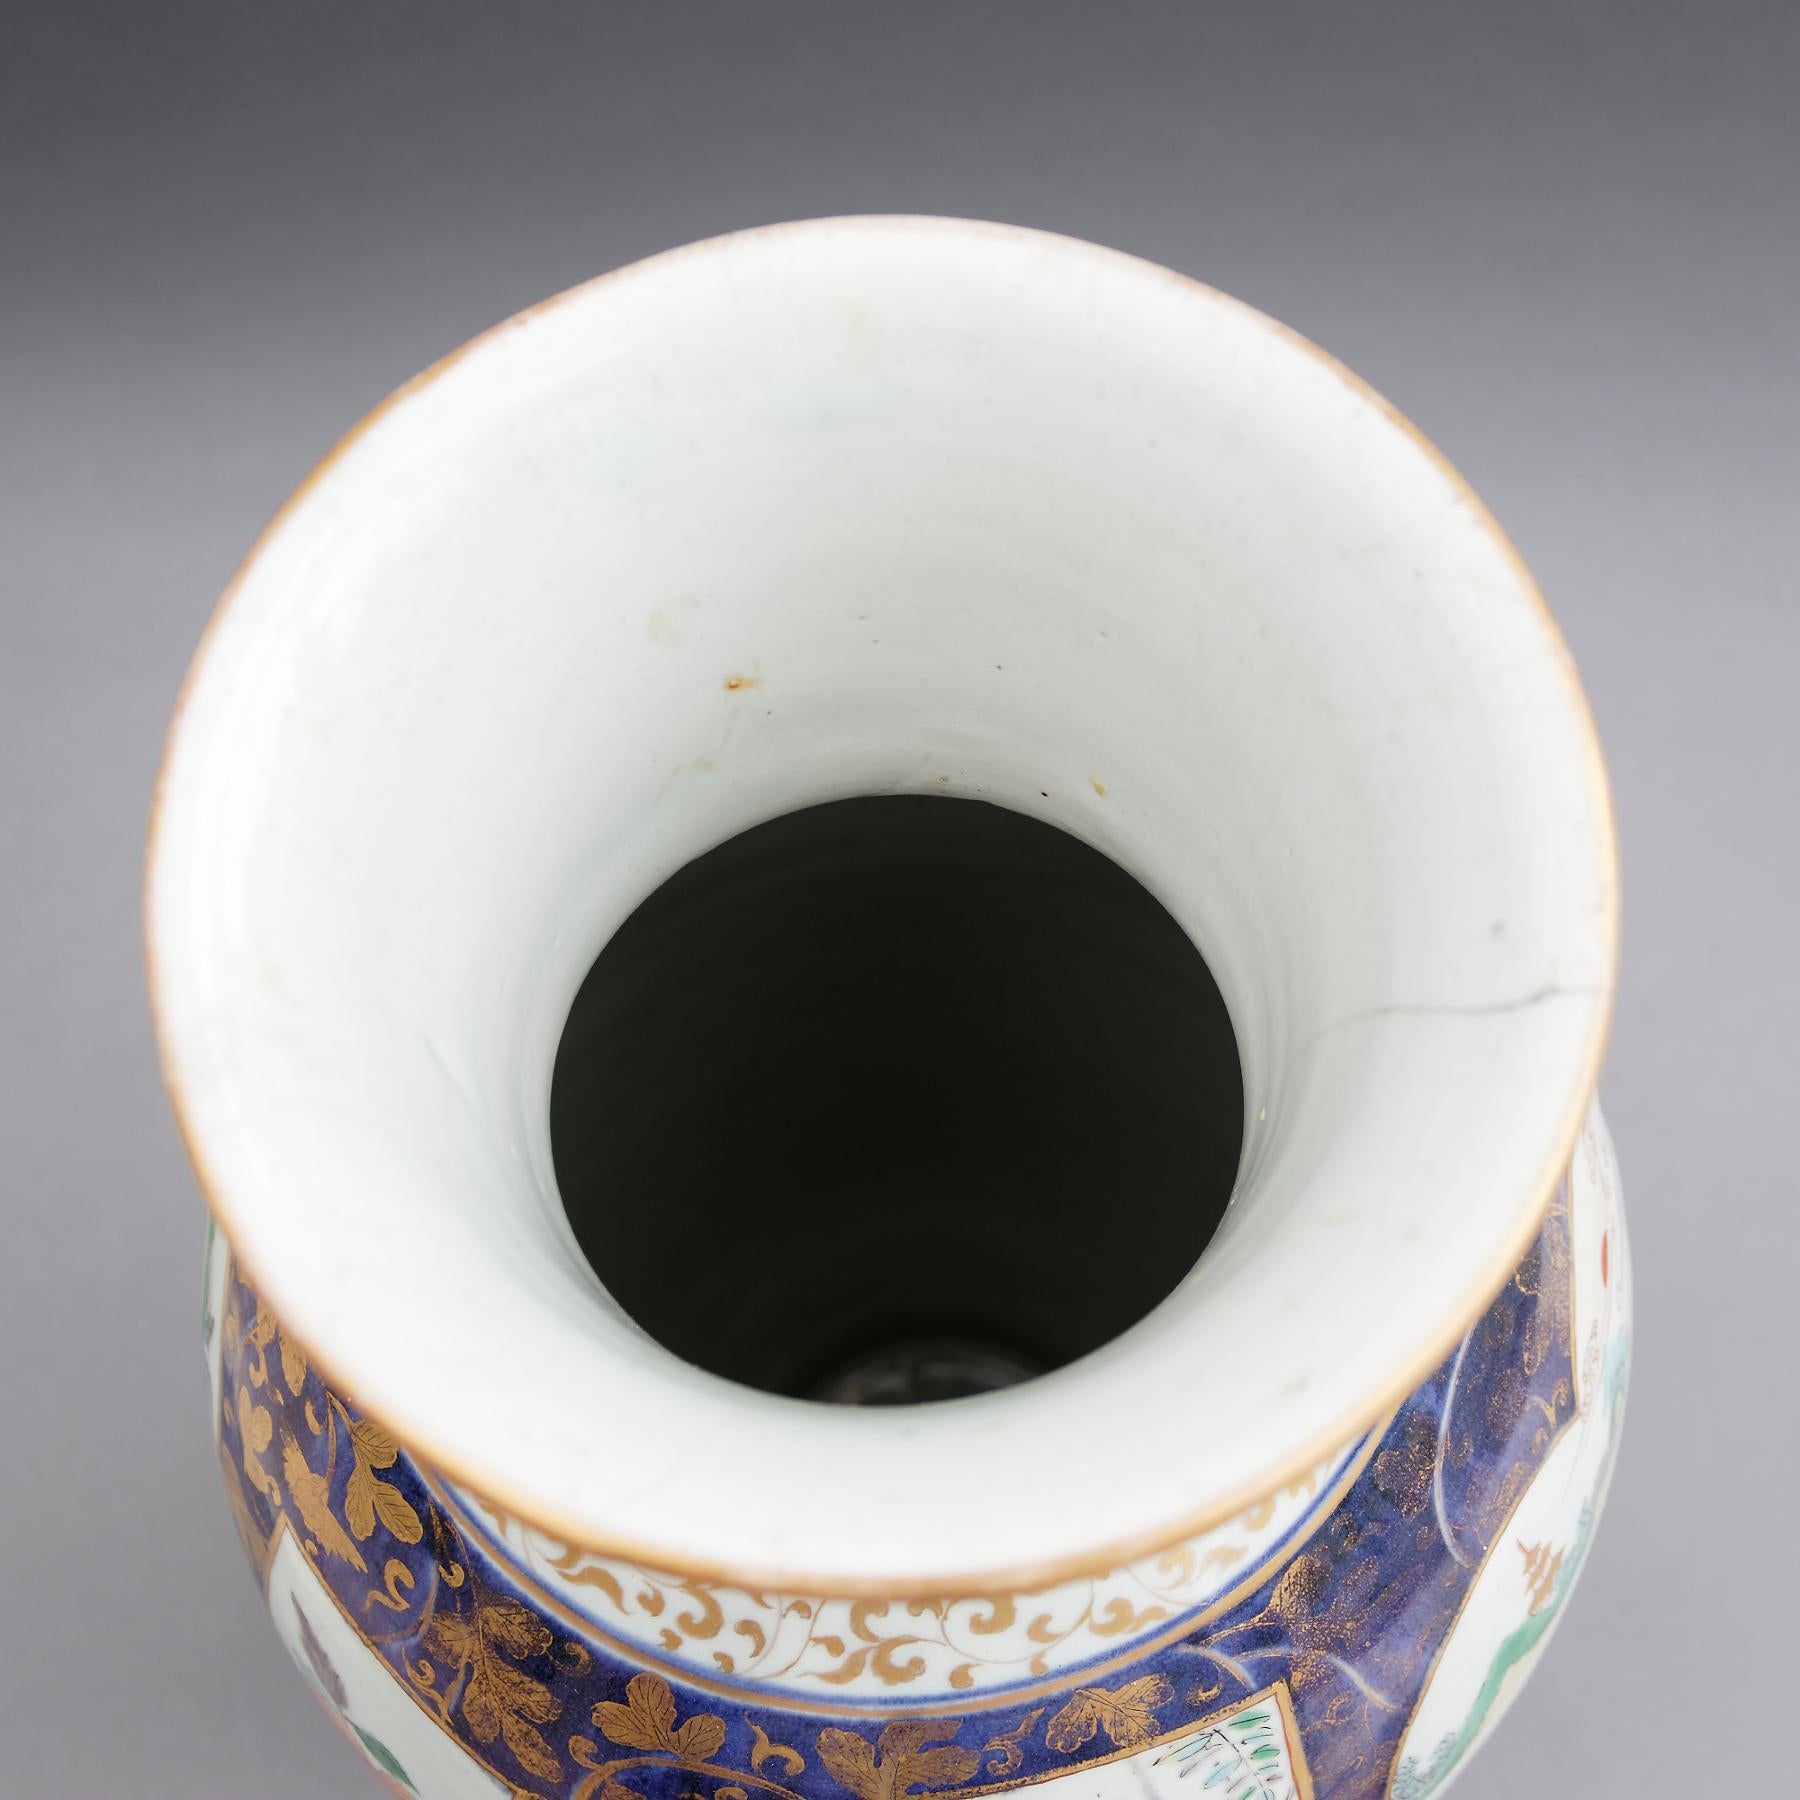 Eine seltene japanische Imari-Vase vom Ende des 17. bis zum Anfang des 18. Jahrhunderts, Porzellan in länglicher, eiförmiger Form mit ausgestelltem Hals, bemalt in der Imari-Farbpalette mit blauer Unterglasur und eisenroter und grüner